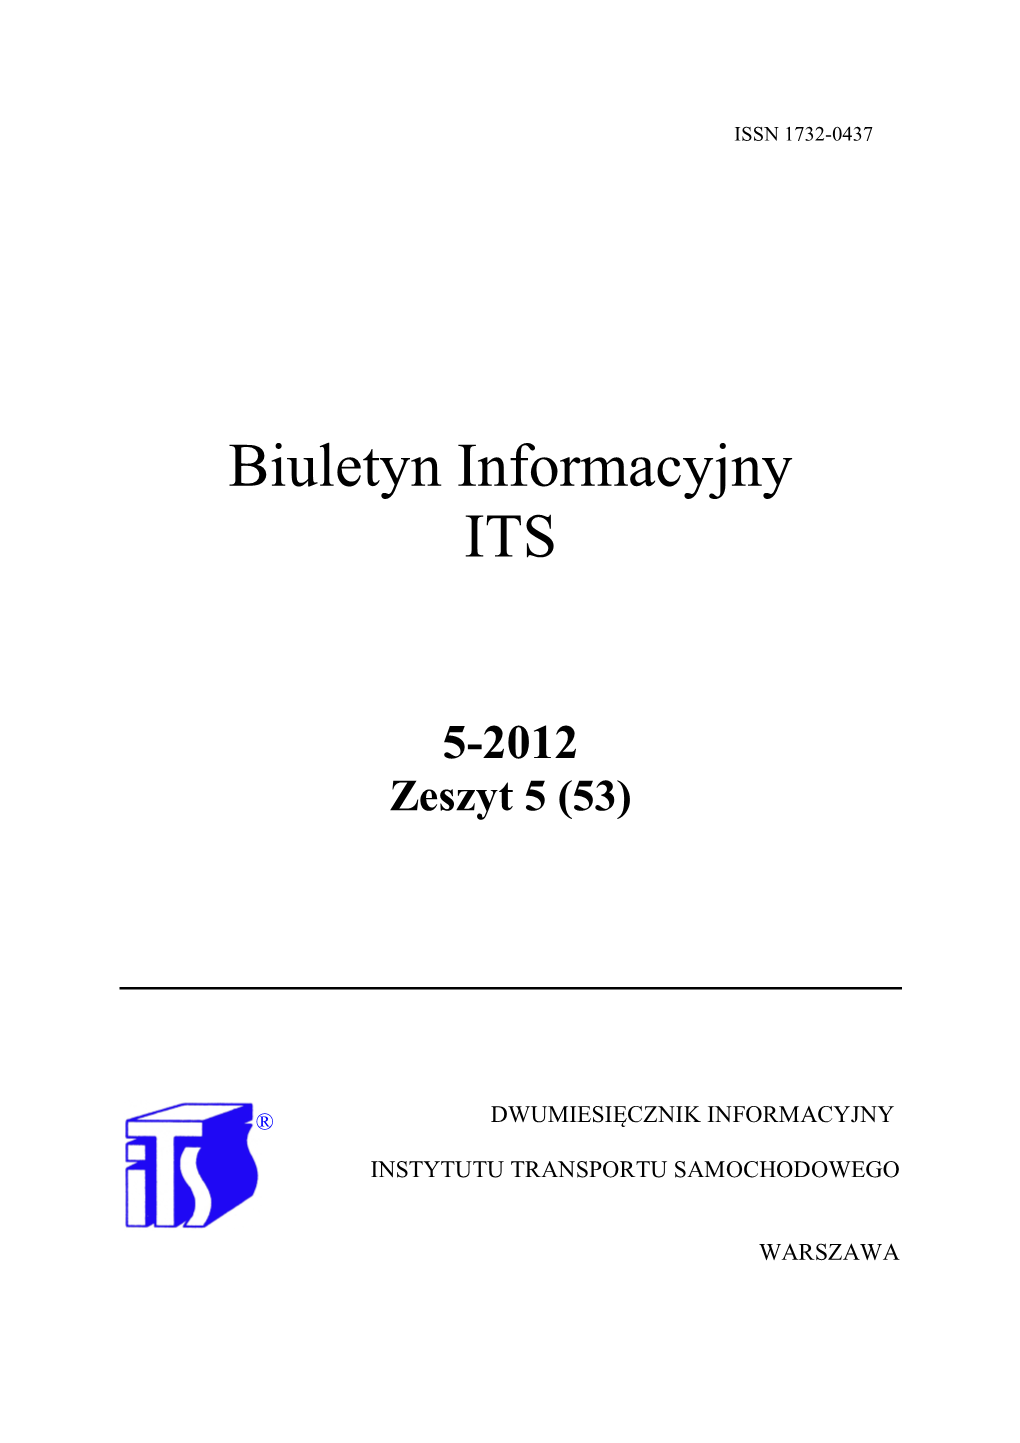 Biuletyn Informacyjny ITS